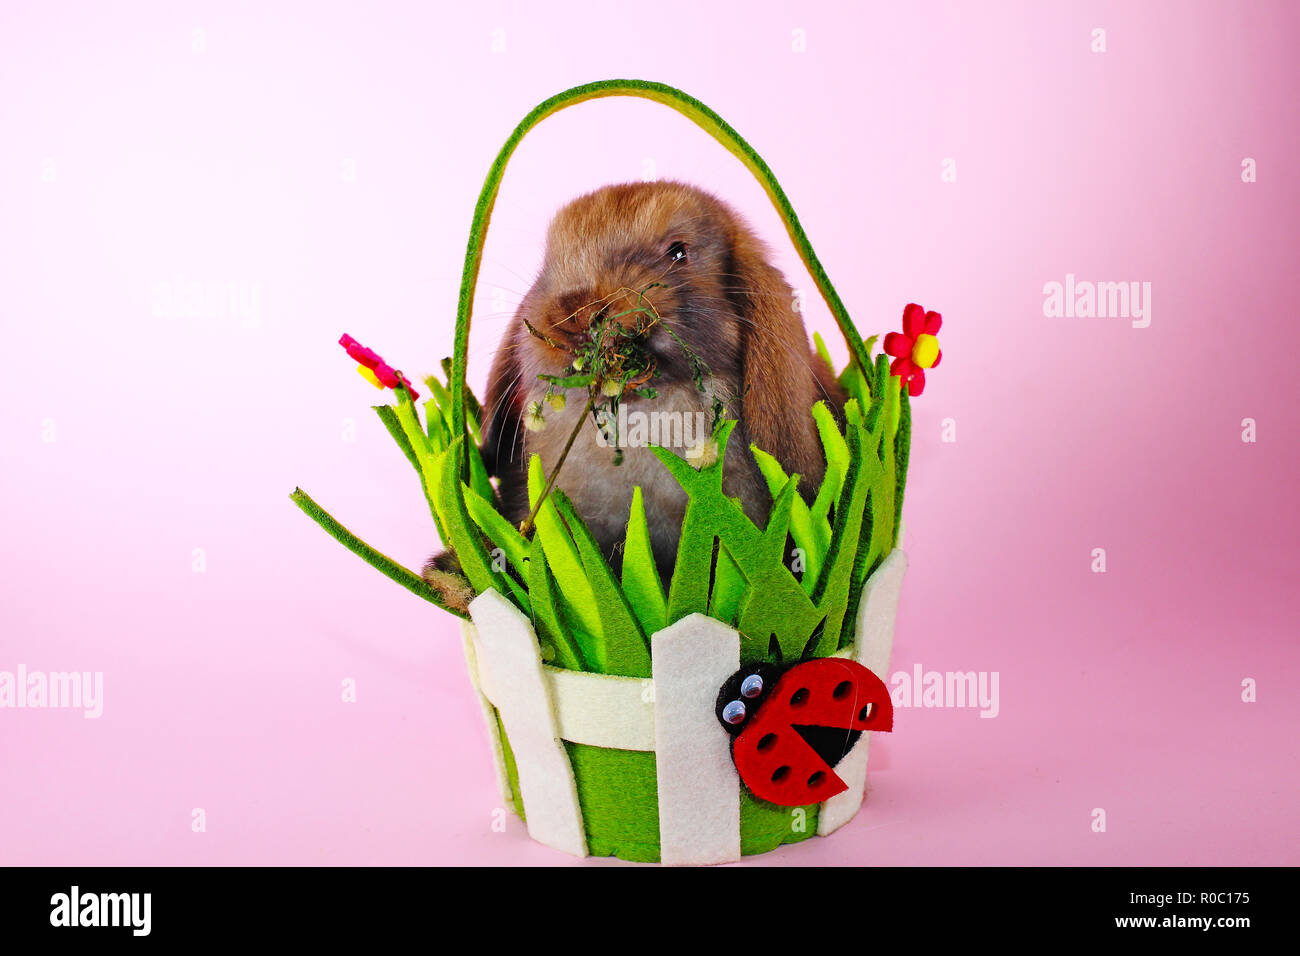 Carino piccolo giovane bunny rabbit lop eared conigli nani Foto Stock